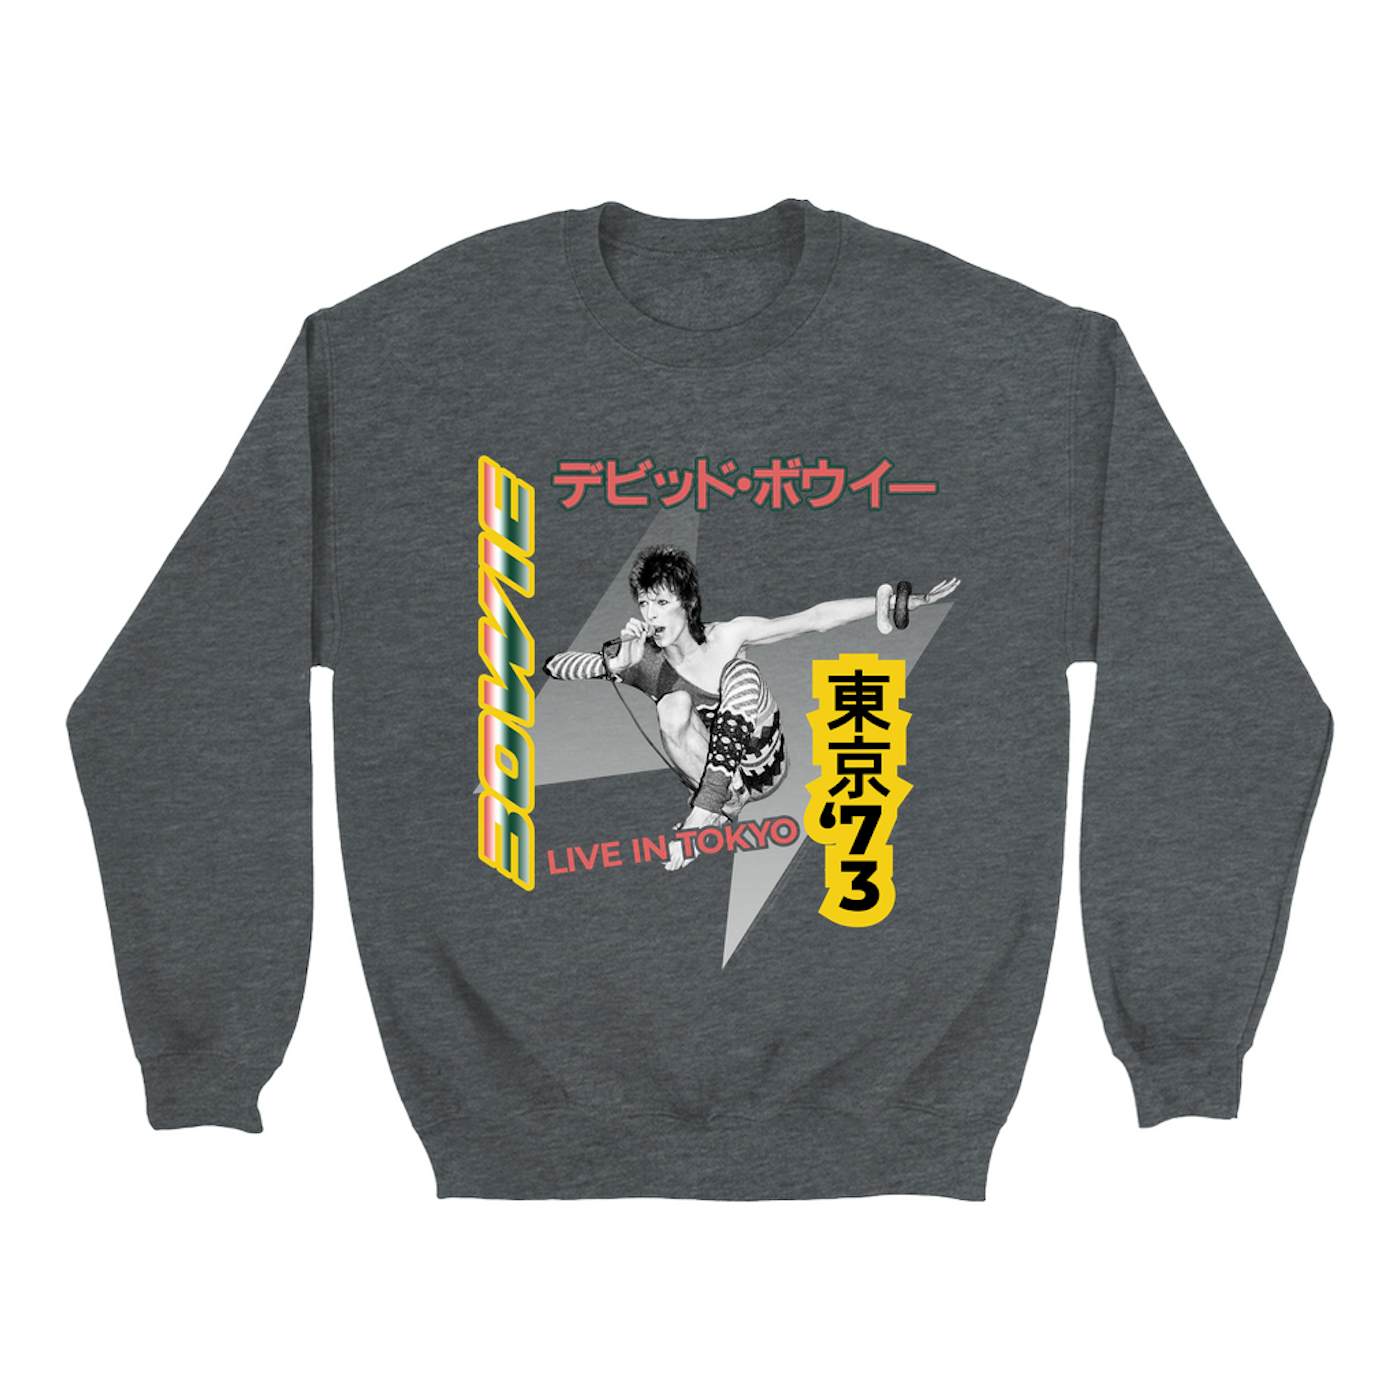 David Bowie Sweatshirt | 1973 Live In Tokyo (Merchbar Exclusive) David Bowie Sweatshirt